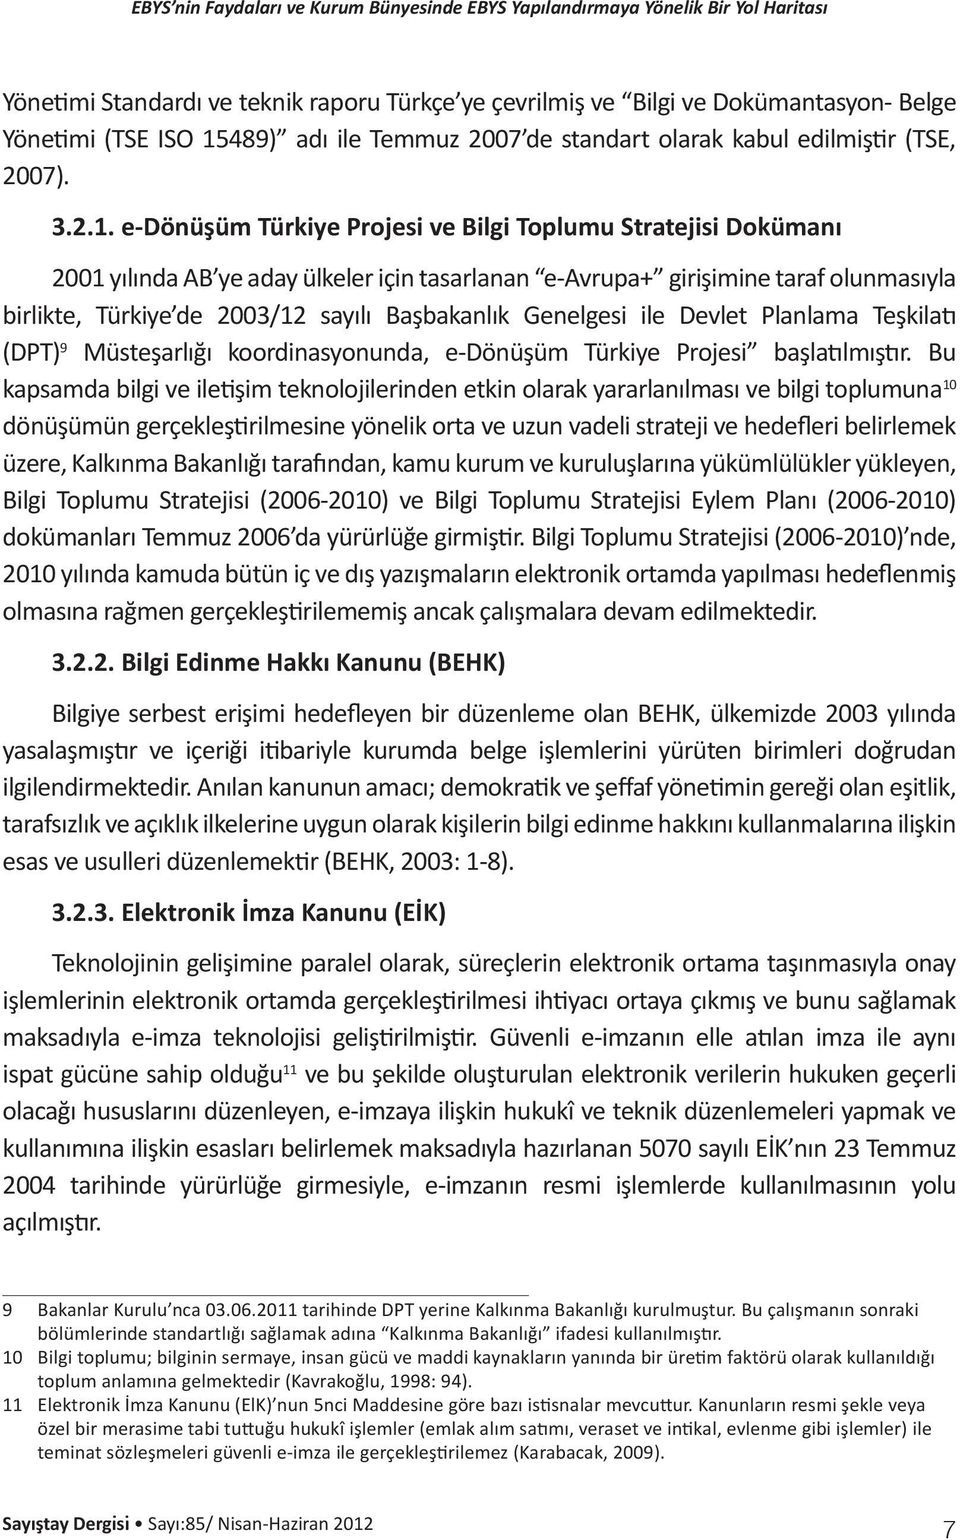 e-dönüşüm Türkiye Projesi ve Bilgi Toplumu Stratejisi Dokümanı 2001 yılında AB ye aday ülkeler için tasarlanan e-avrupa+ girişimine taraf olunmasıyla birlikte, Türkiye de 2003/12 sayılı Başbakanlık